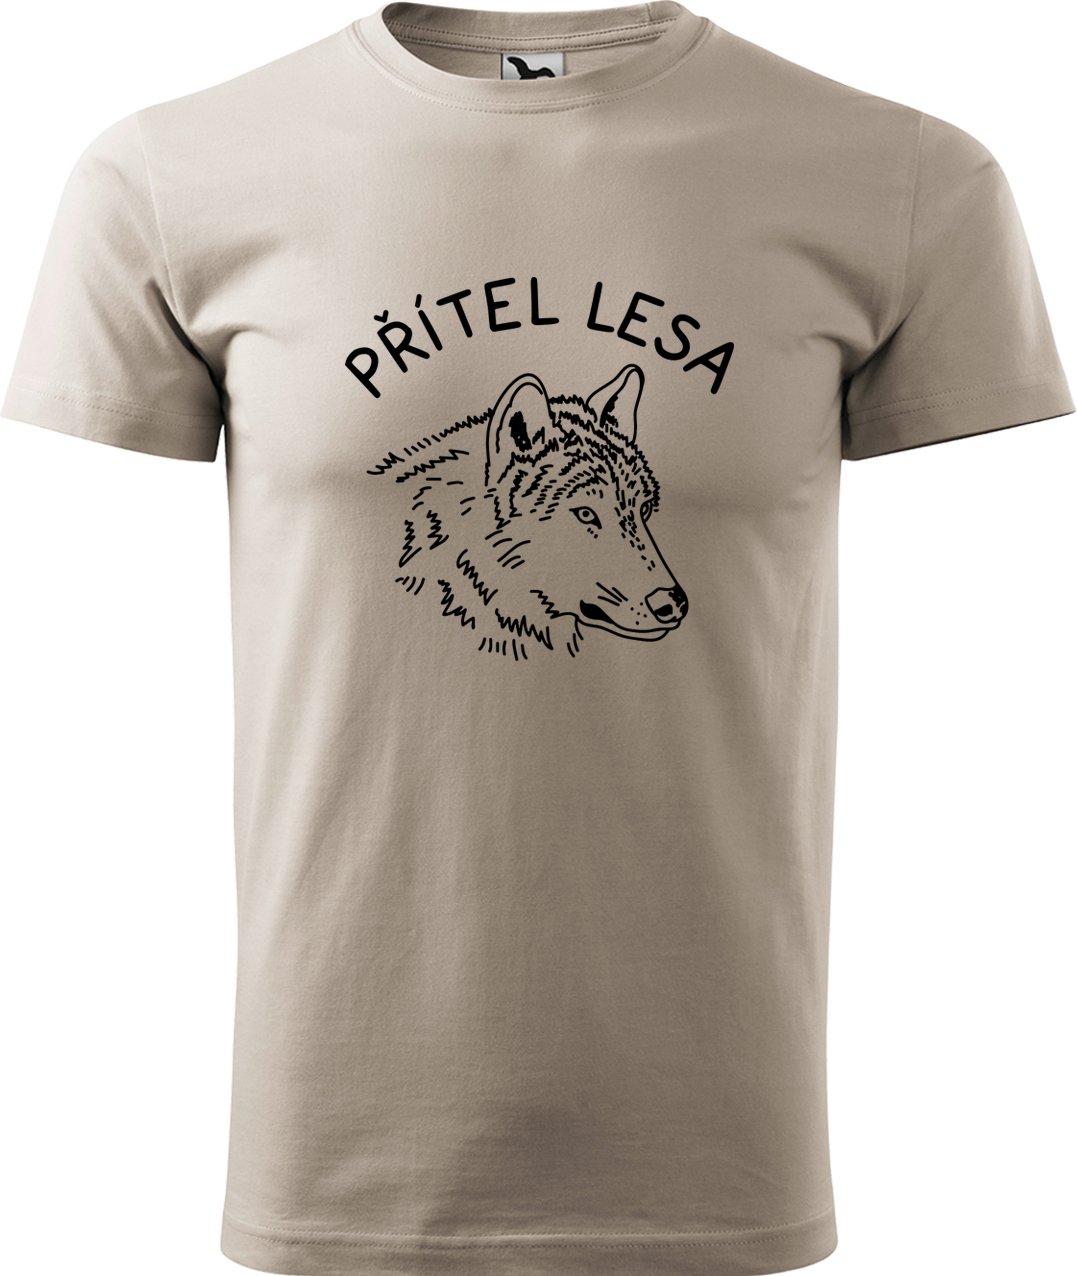 Pánské tričko s vlkem - Přítel lesa Velikost: 3XL, Barva: Béžová (51), Střih: pánský